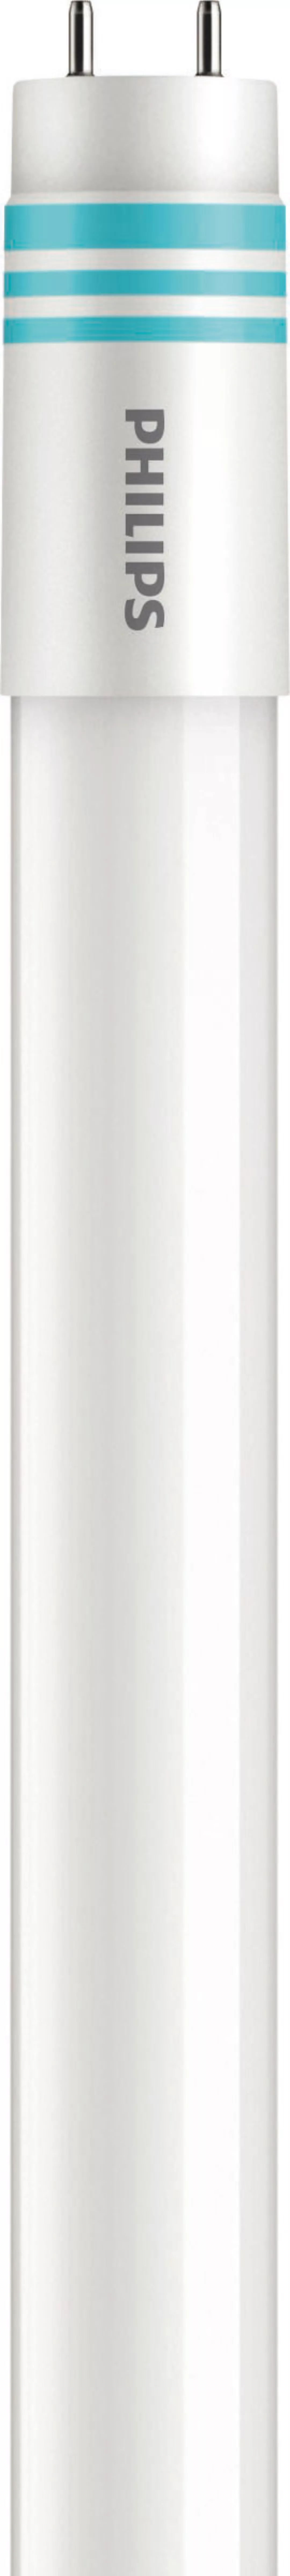 Philips Lighting LED-Tube T8 universal G13, 830, 1500mm MAS LEDtube#3167440 günstig online kaufen